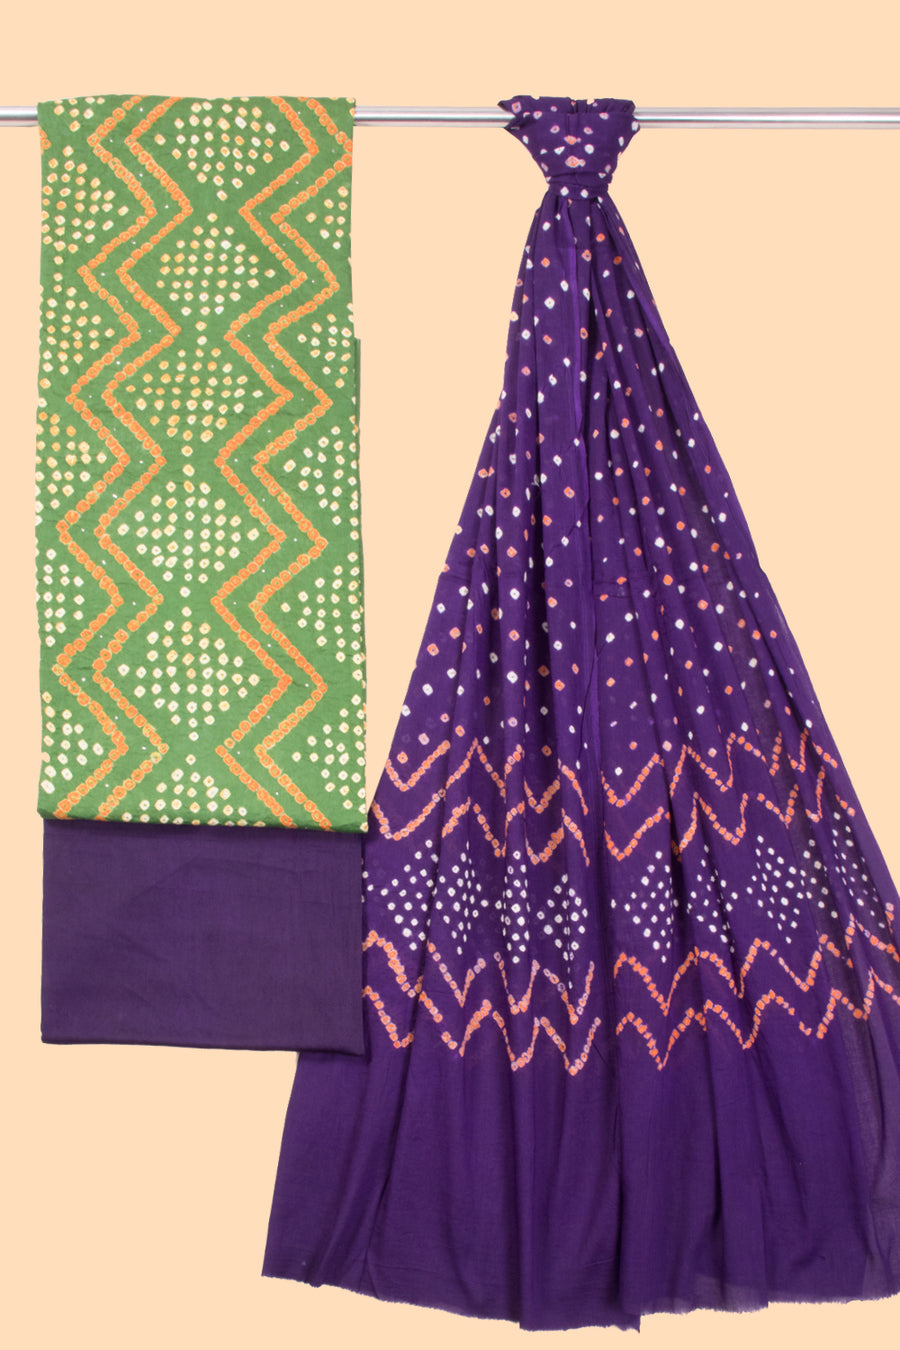 Green Bandhani Cotton 3-Piece Salwar Suit Material -Avishya